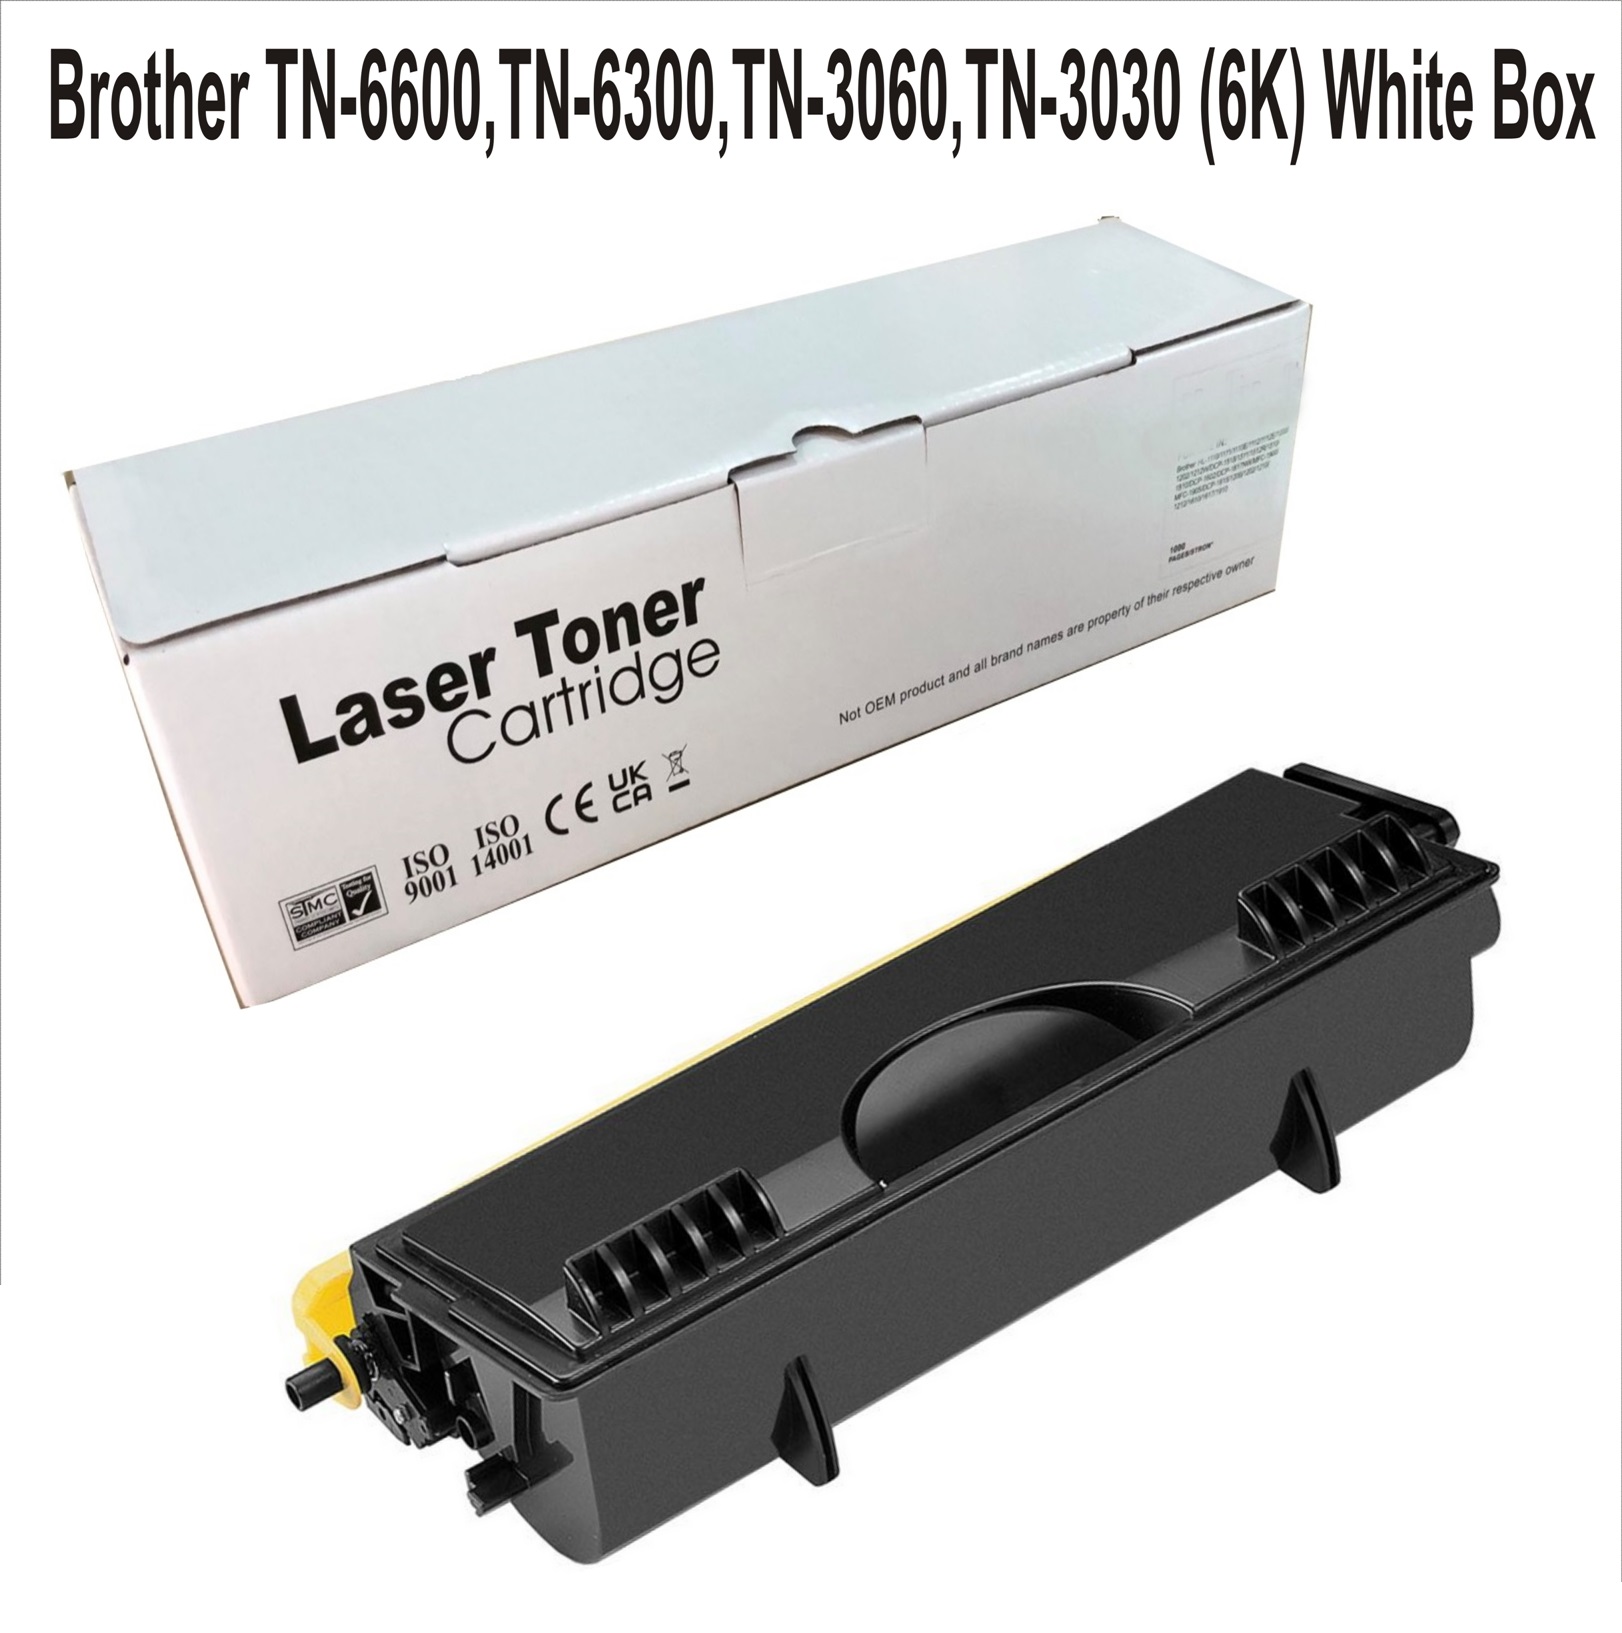 Brother TN-6600,TN-6300,TN-3060 (6K) White Box